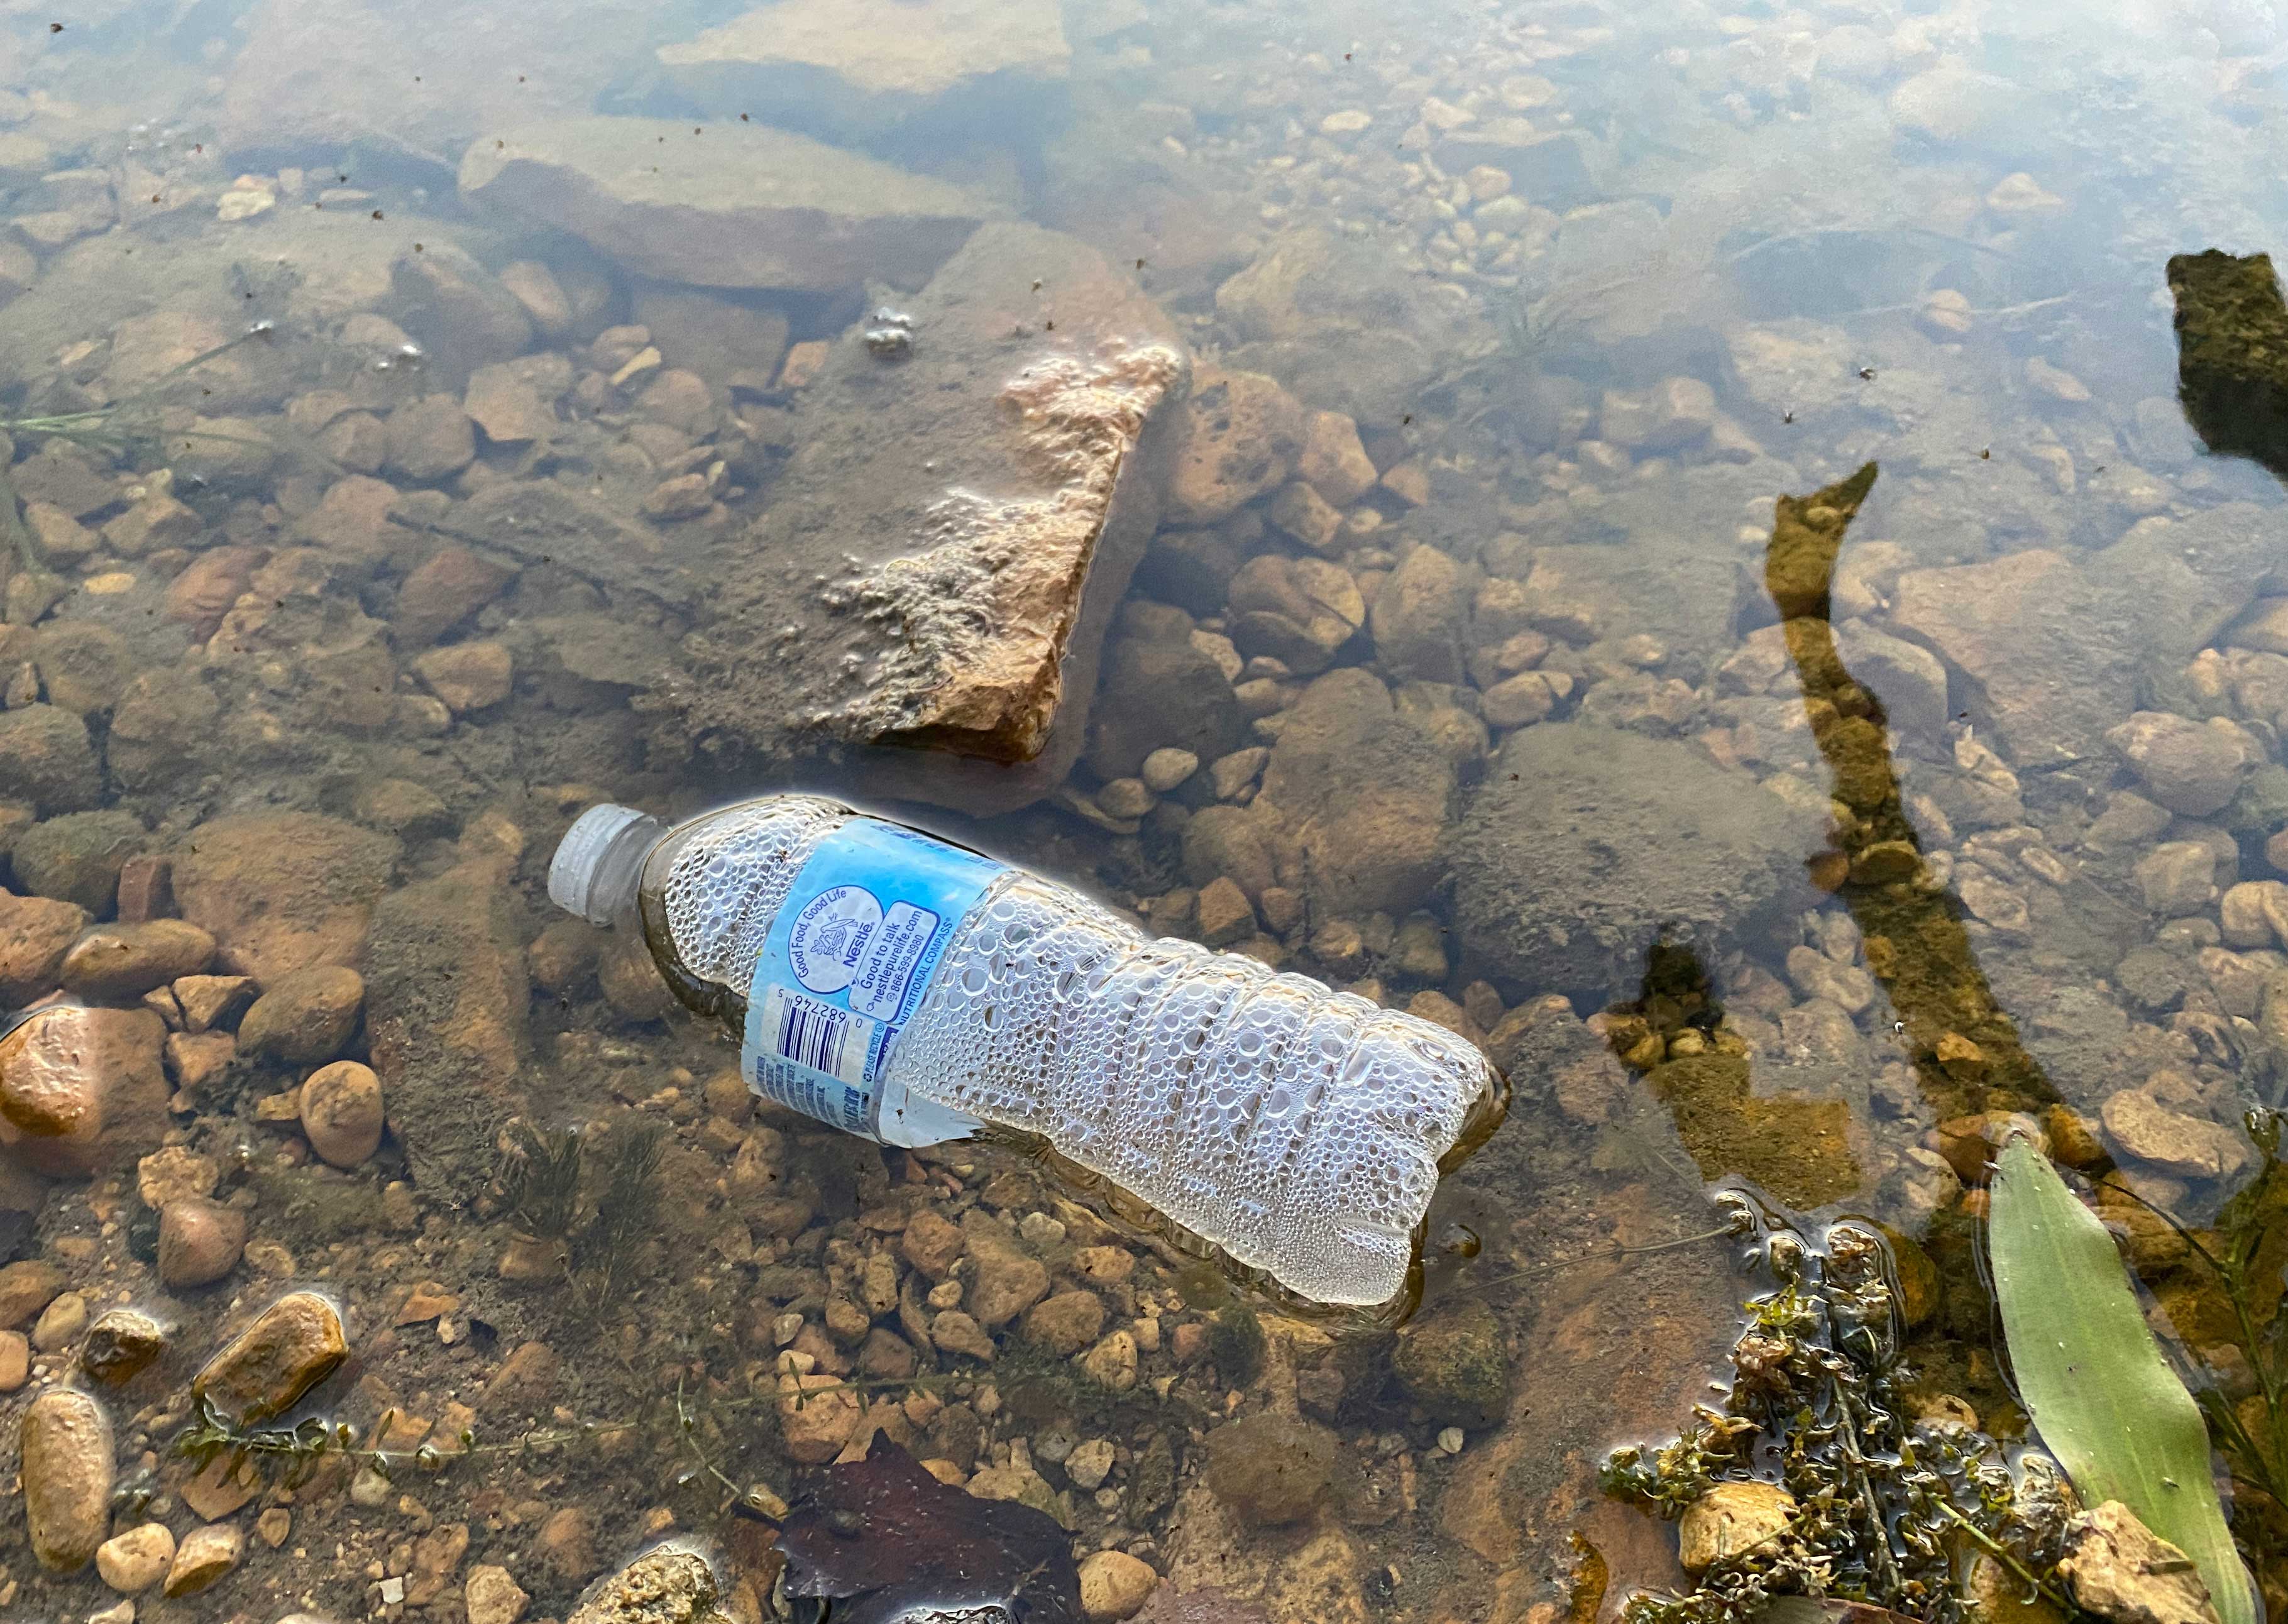 A plastic bottle in water.